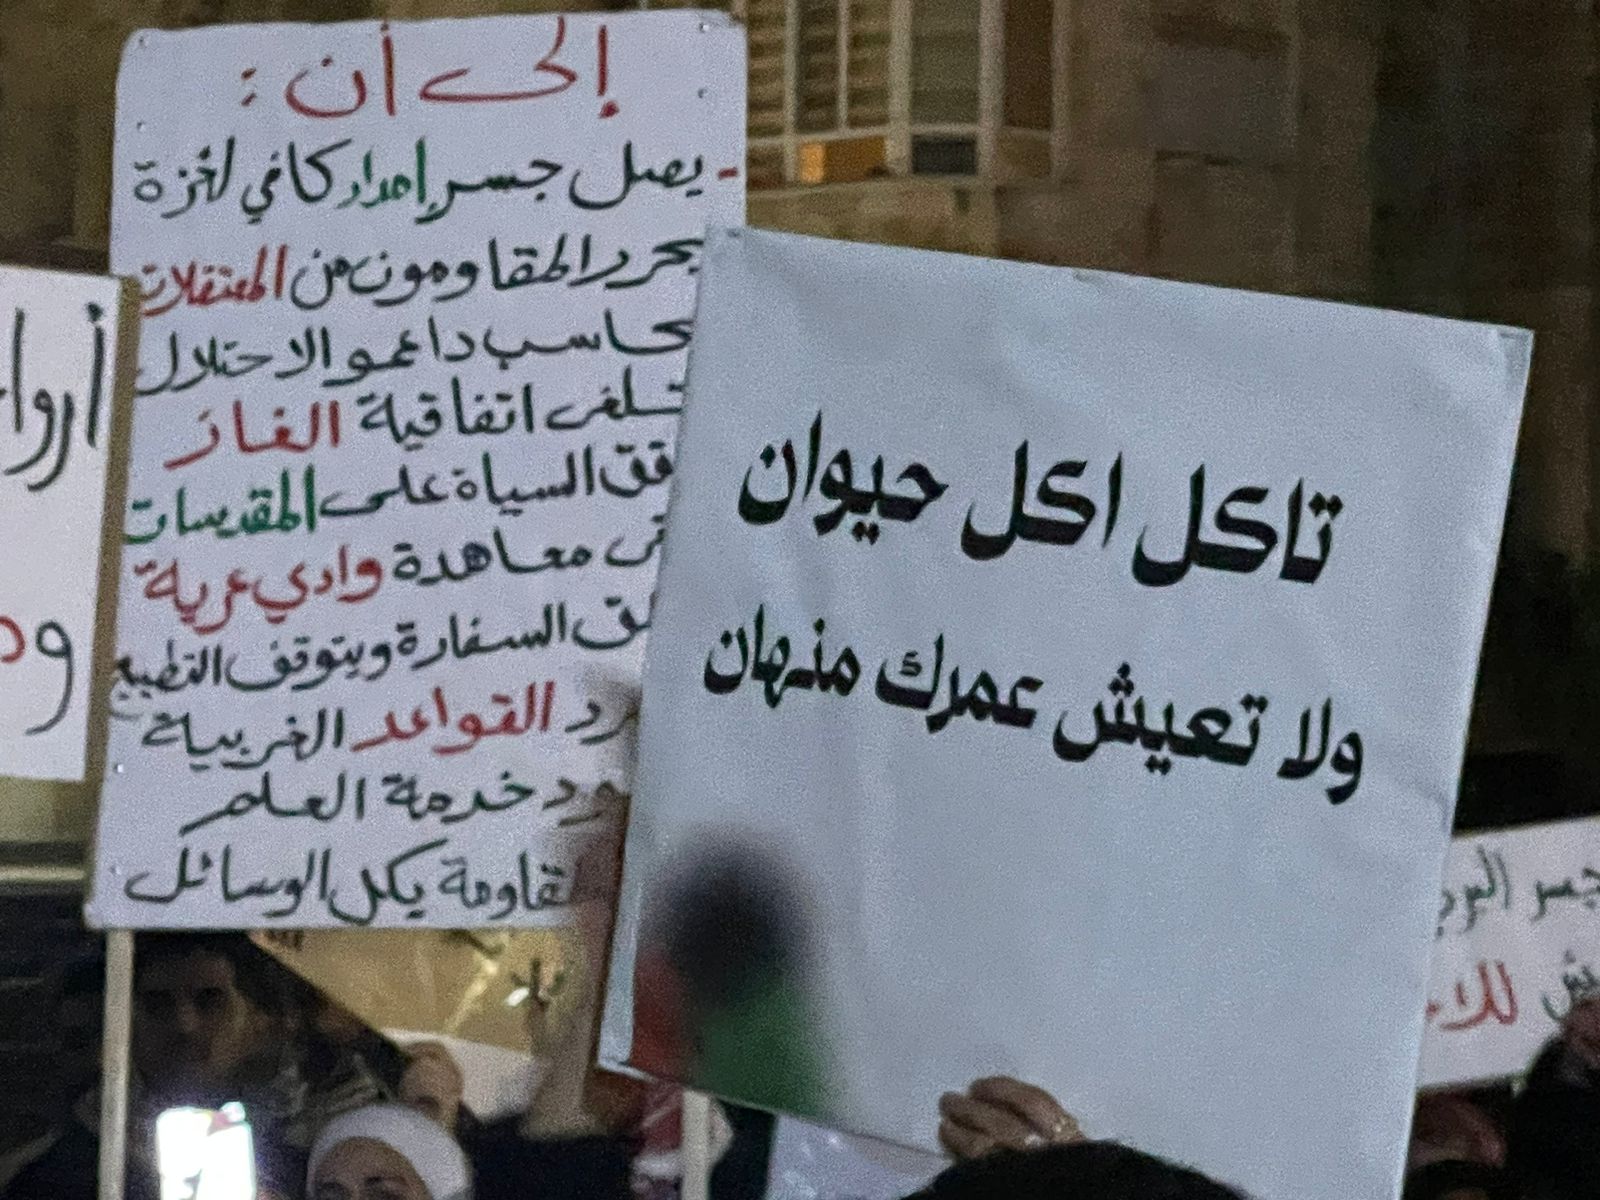 اعتصام حاشد قرب سفارة الاحتلال في عمان يطالب بمنع دخول بضائع الى الكيان الصهيوني  صور